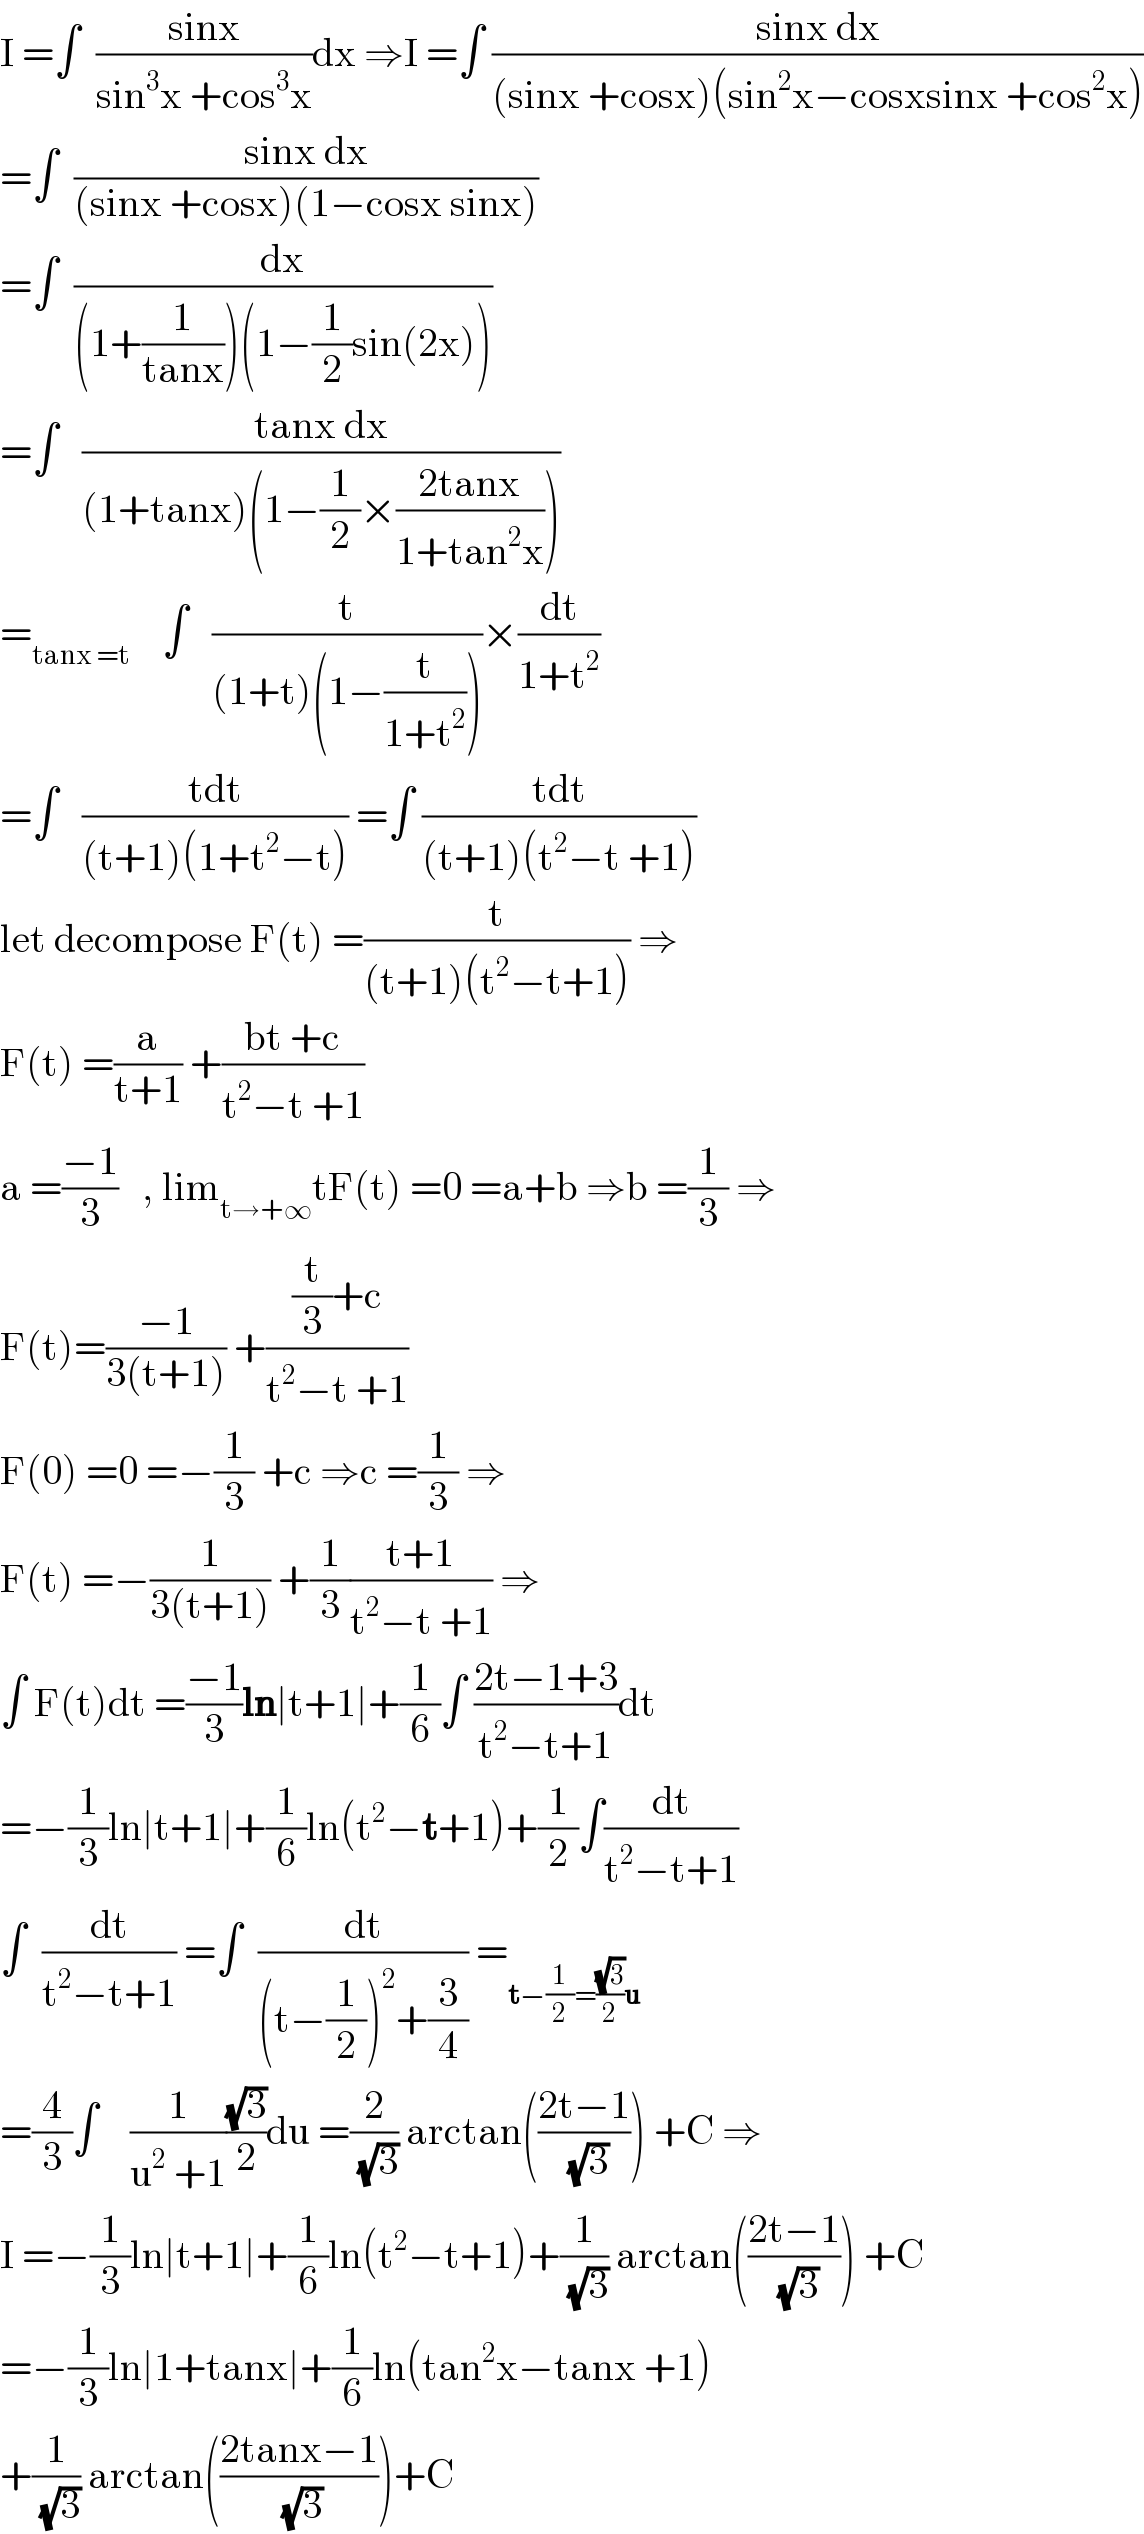 I =∫  ((sinx)/(sin^3 x +cos^3 x))dx ⇒I =∫ ((sinx dx)/((sinx +cosx)(sin^2 x−cosxsinx +cos^2 x)))  =∫  ((sinx dx)/((sinx +cosx)(1−cosx sinx)))  =∫  (dx/((1+(1/(tanx)))(1−(1/2)sin(2x))))  =∫   ((tanx dx)/((1+tanx)(1−(1/2)×((2tanx)/(1+tan^2 x)))))  =_(tanx =t)     ∫   (t/((1+t)(1−(t/(1+t^2 )))))×(dt/(1+t^2 ))  =∫   ((tdt)/((t+1)(1+t^2 −t))) =∫ ((tdt)/((t+1)(t^2 −t +1)))  let decompose F(t) =(t/((t+1)(t^2 −t+1))) ⇒  F(t) =(a/(t+1)) +((bt +c)/(t^2 −t +1))  a =((−1)/3)   , lim_(t→+∞) tF(t) =0 =a+b ⇒b =(1/3) ⇒  F(t)=((−1)/(3(t+1))) +(((t/3)+c)/(t^2 −t +1))  F(0) =0 =−(1/3) +c ⇒c =(1/3) ⇒  F(t) =−(1/(3(t+1))) +(1/3)((t+1)/(t^2 −t +1)) ⇒  ∫ F(t)dt =((−1)/3)ln∣t+1∣+(1/6)∫ ((2t−1+3)/(t^2 −t+1))dt  =−(1/3)ln∣t+1∣+(1/6)ln(t^2 −t+1)+(1/2)∫(dt/(t^2 −t+1))  ∫  (dt/(t^2 −t+1)) =∫  (dt/((t−(1/2))^2 +(3/4))) =_(t−(1/2)=((√3)/2)u)   =(4/3)∫    (1/(u^2  +1))((√3)/2)du =(2/(√3)) arctan(((2t−1)/(√3))) +C ⇒  I =−(1/3)ln∣t+1∣+(1/6)ln(t^2 −t+1)+(1/(√3)) arctan(((2t−1)/(√3))) +C  =−(1/3)ln∣1+tanx∣+(1/6)ln(tan^2 x−tanx +1)  +(1/(√3)) arctan(((2tanx−1)/(√3)))+C  